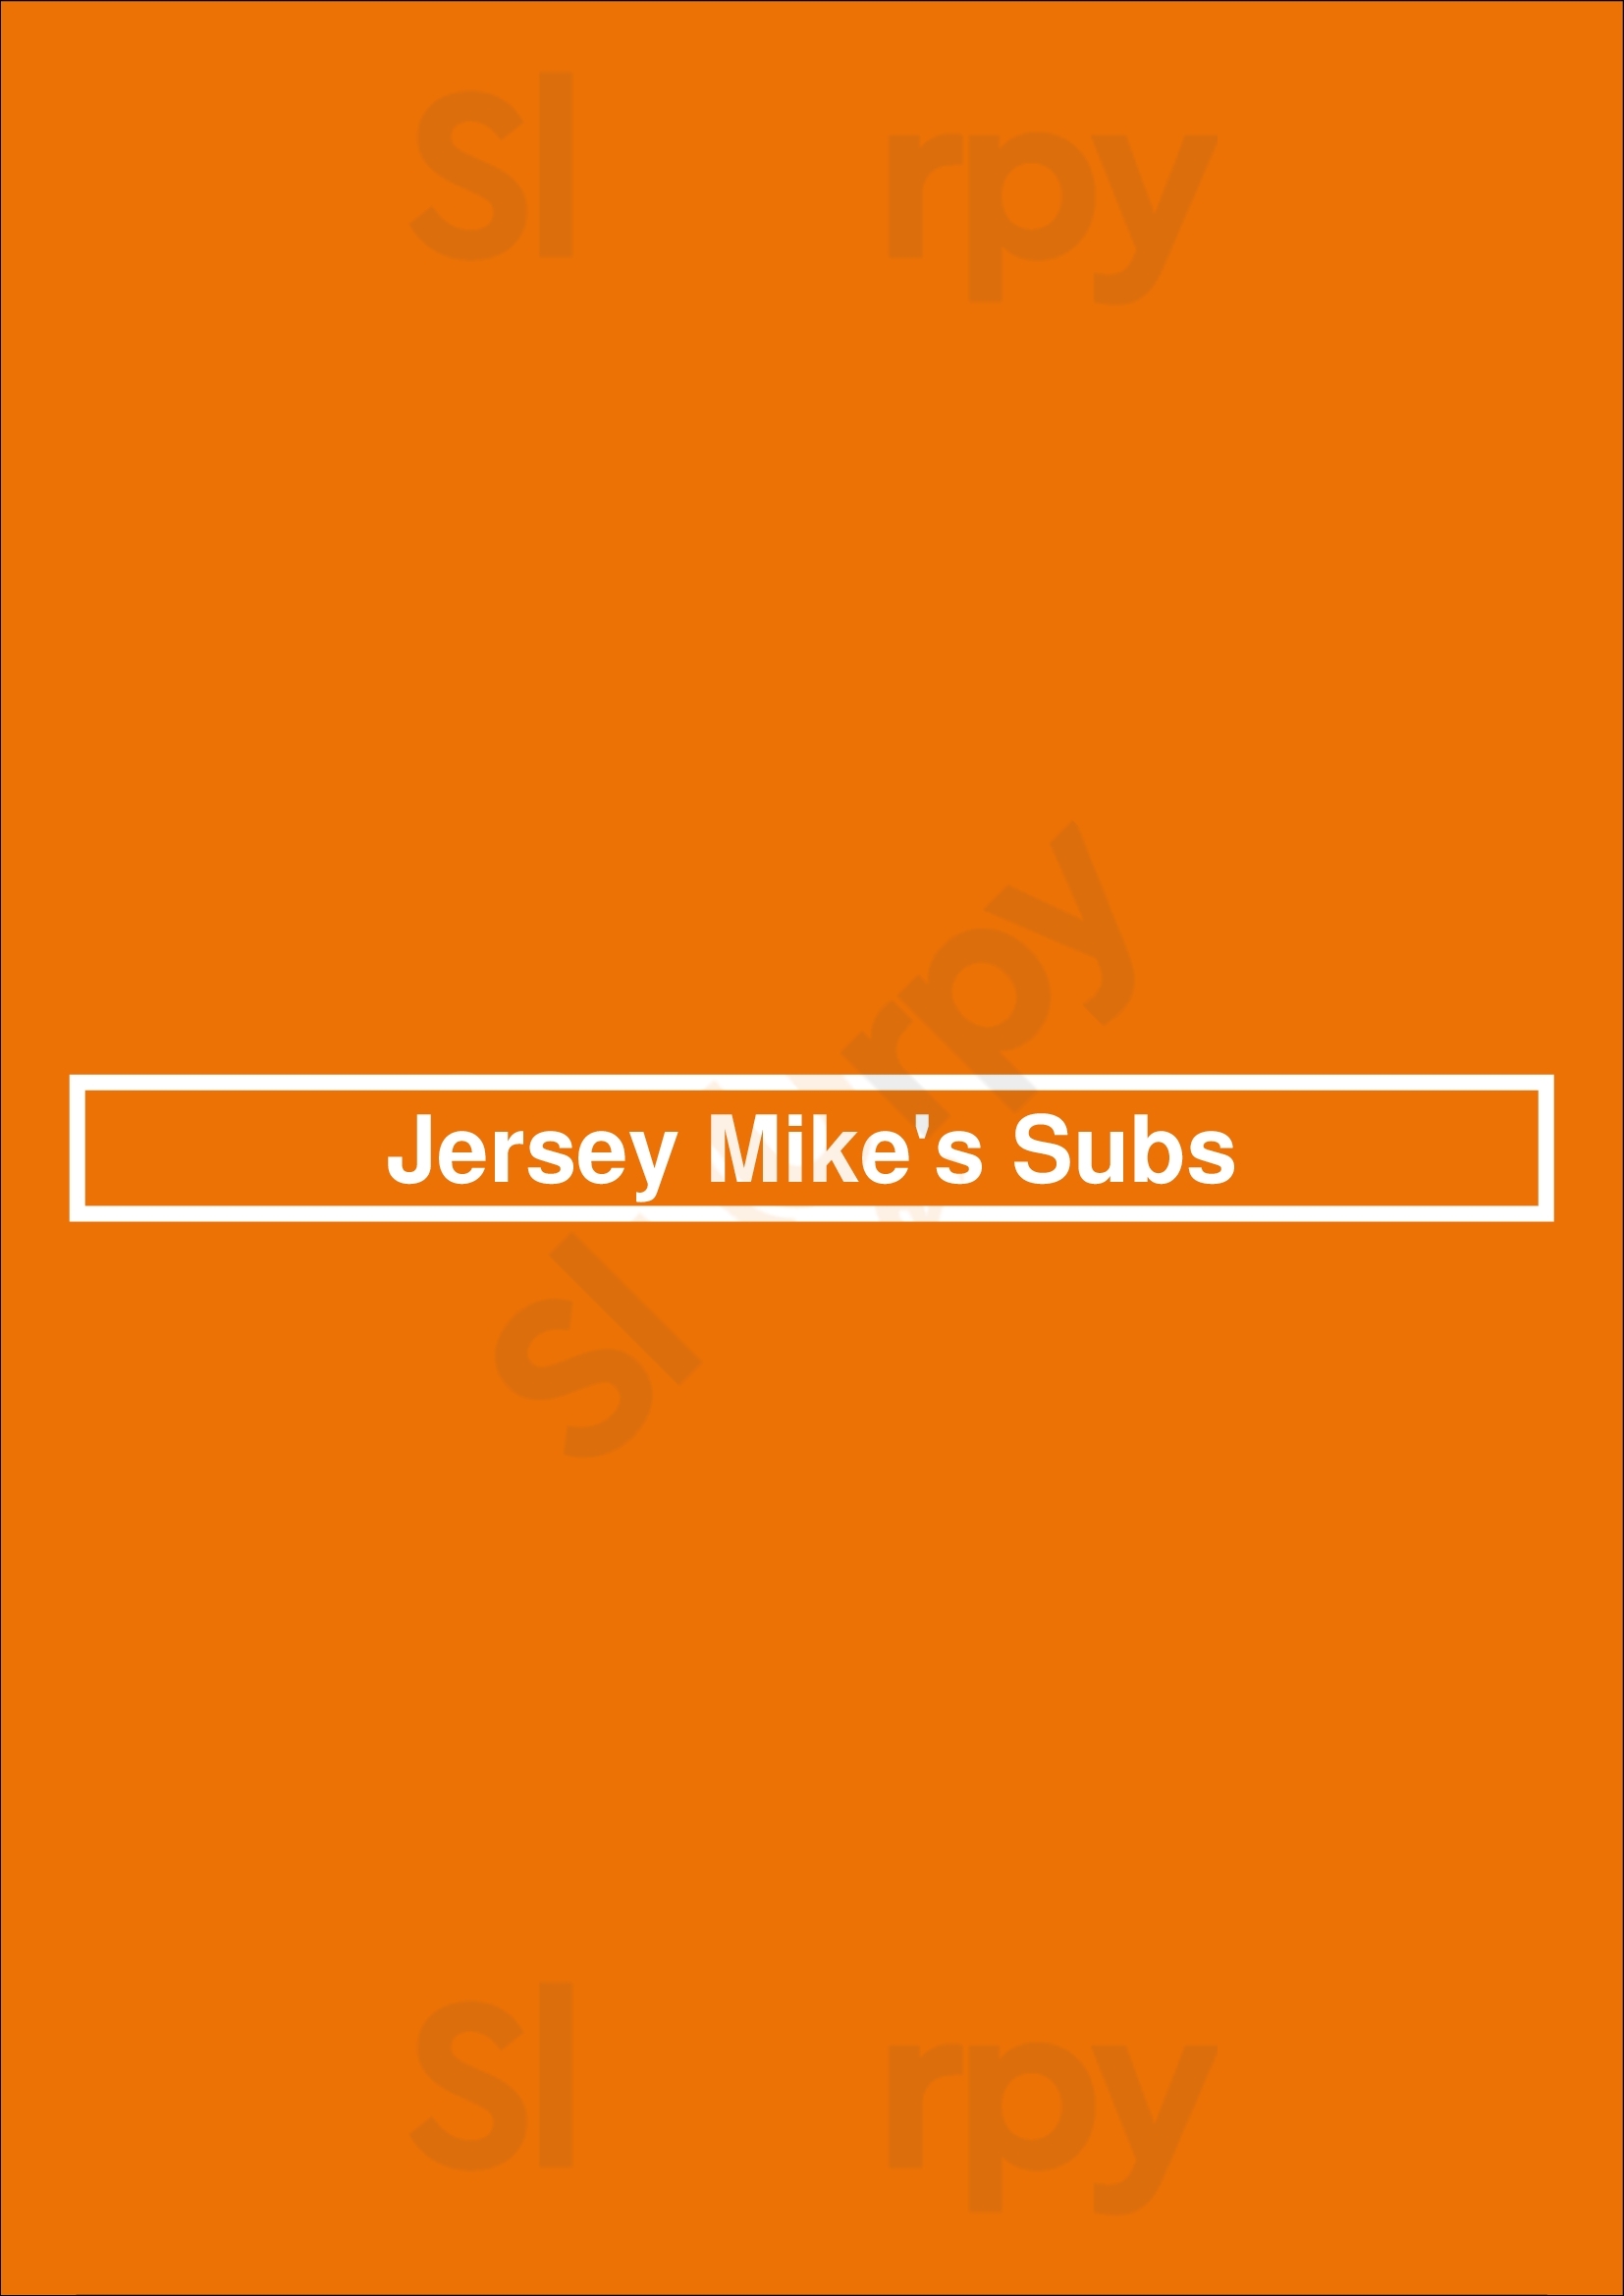 Jersey Mike's Subs Cincinnati Menu - 1